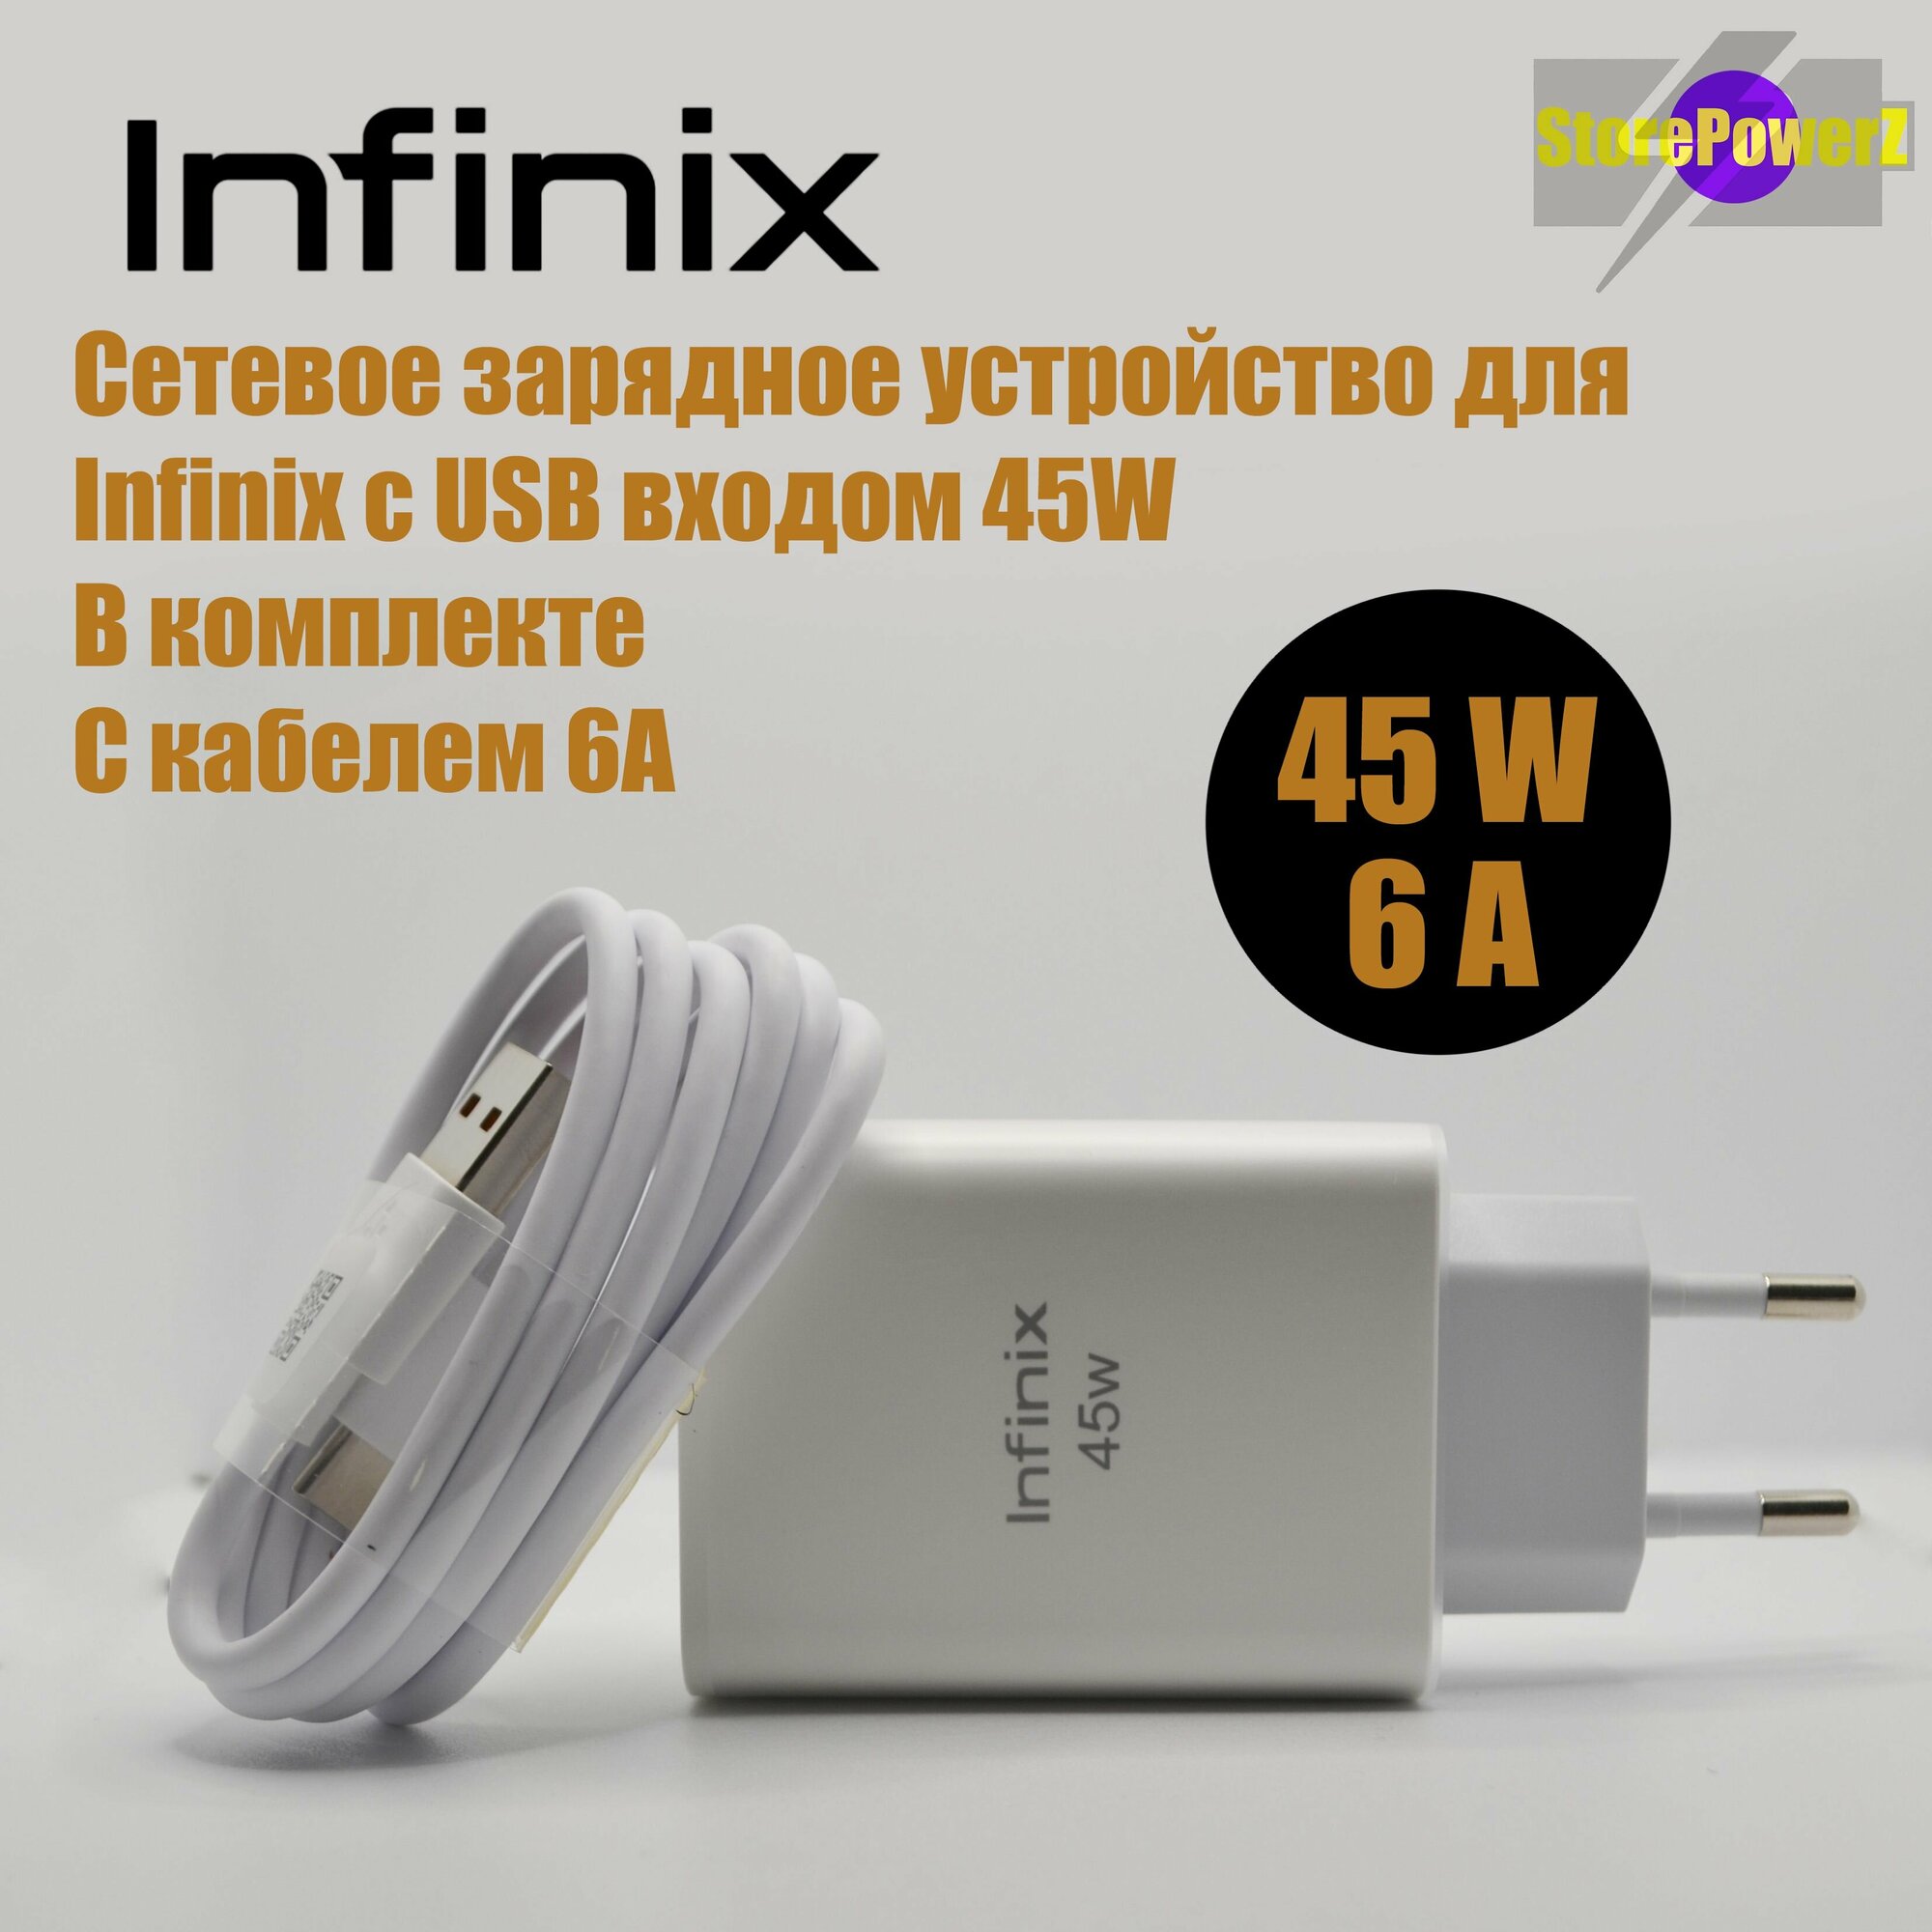 Устройство сетевое зарядное с USB входом для Infinix 45W (U450XEA) в комплекте с кабелем 6А цвет: White